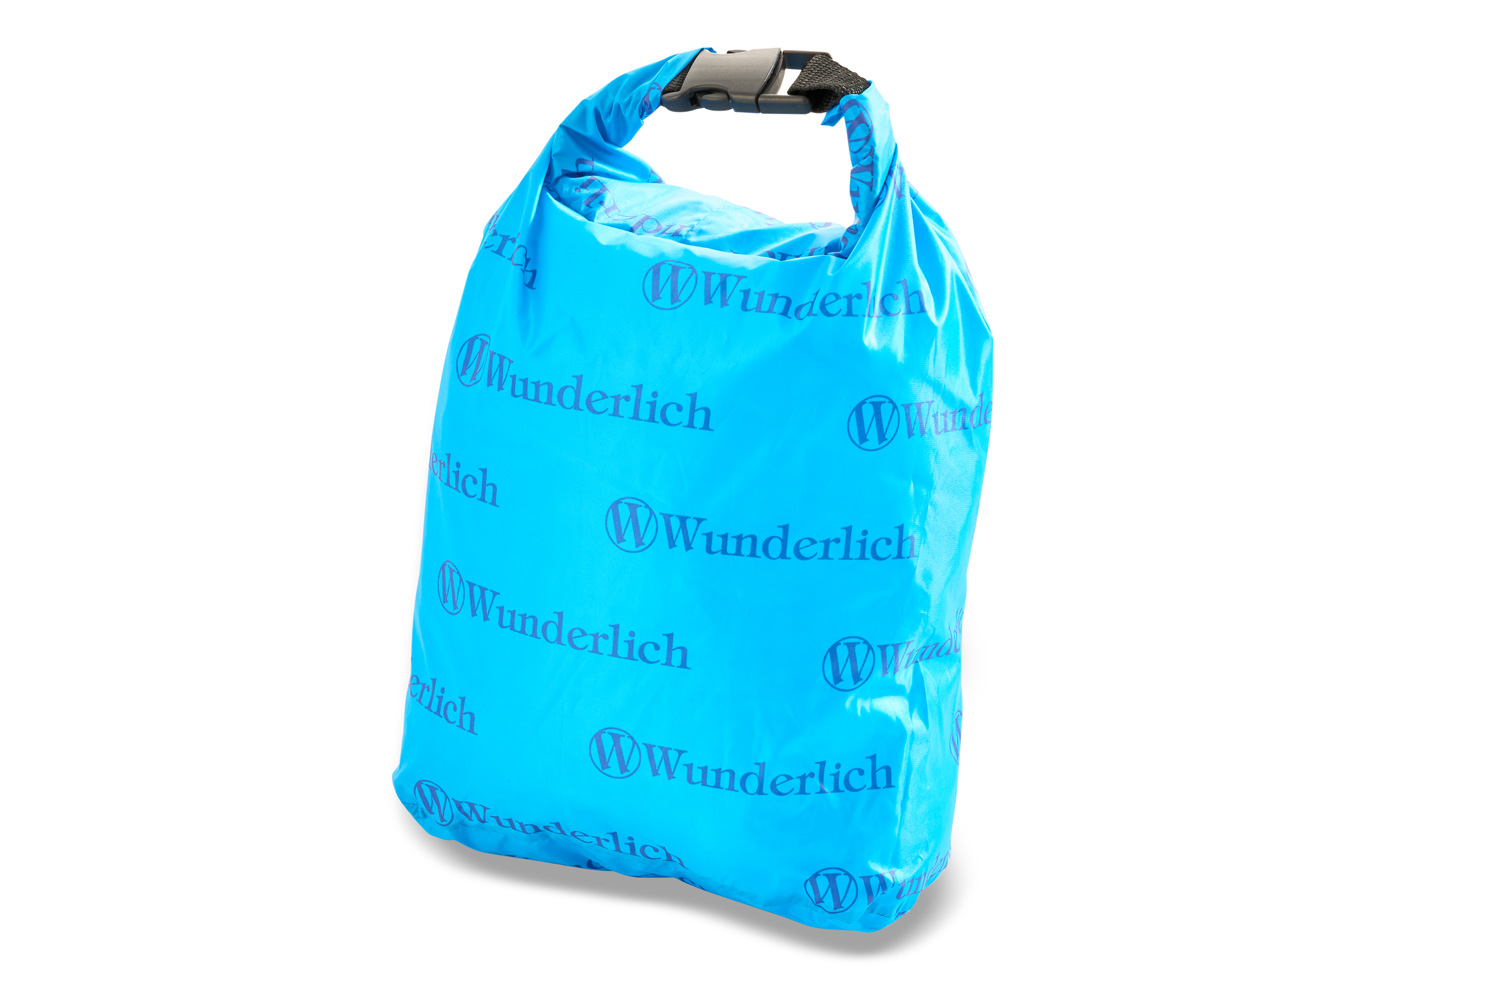 Wunderlich luggage bag - waterproof